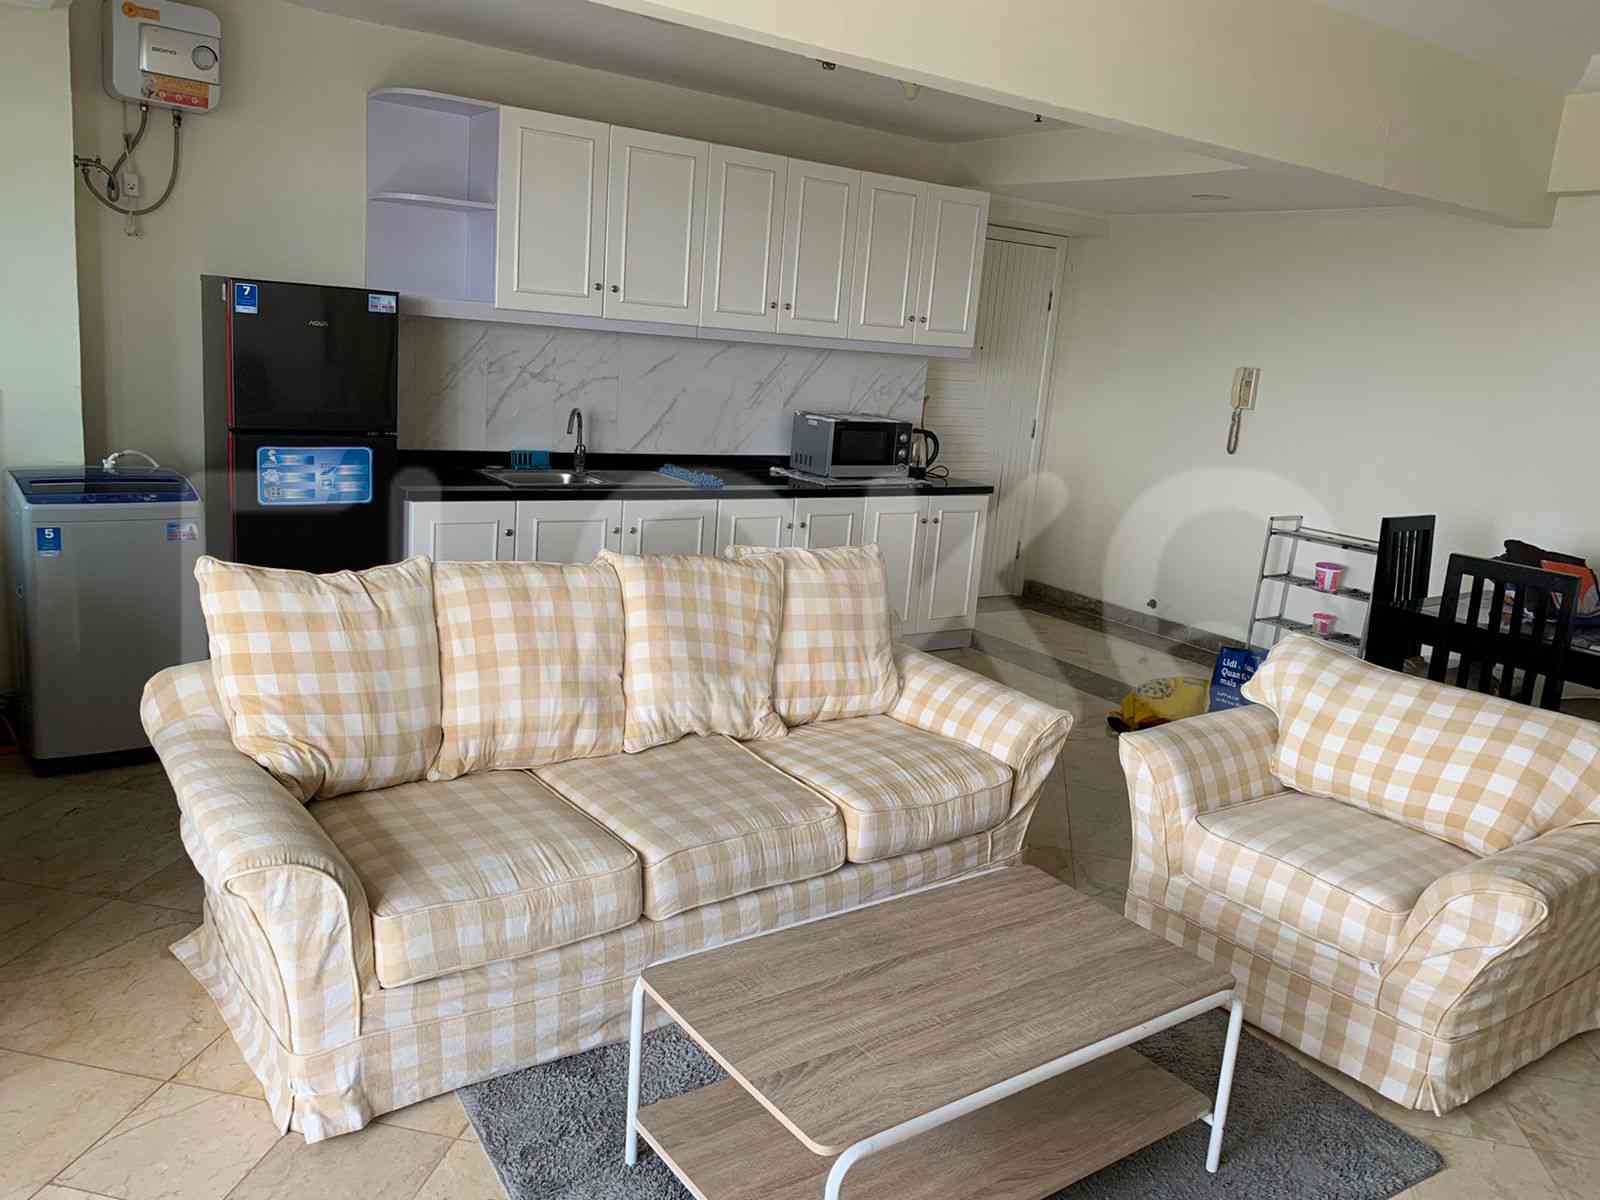 2 Bedroom on 23rd Floor for Rent in BonaVista Apartment - fle8f4 3